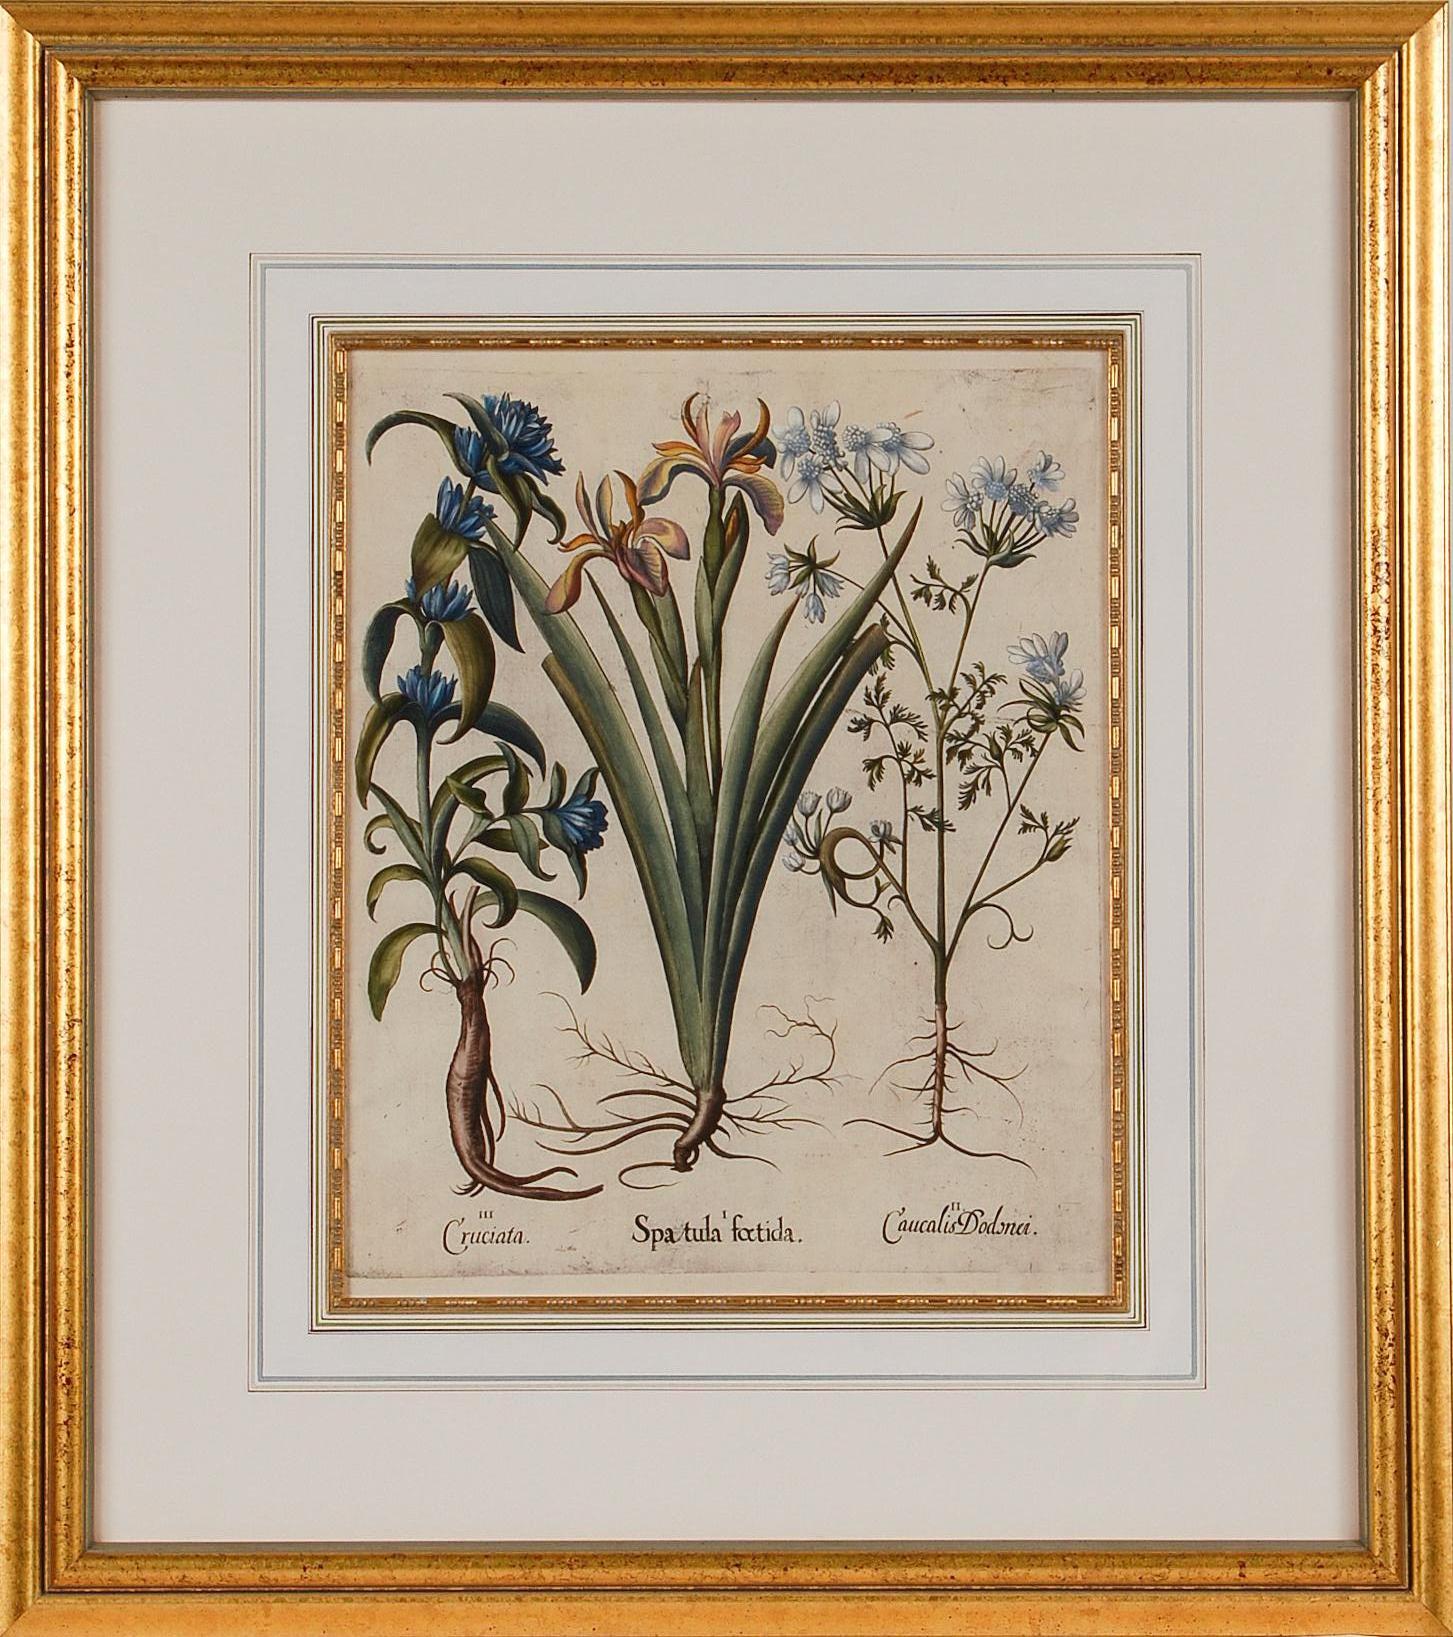 Figurative Print Basilius Besler - Iris Flowering & Other Botanicals : Encadrement 17th C. Besler Gravure colorée à la main